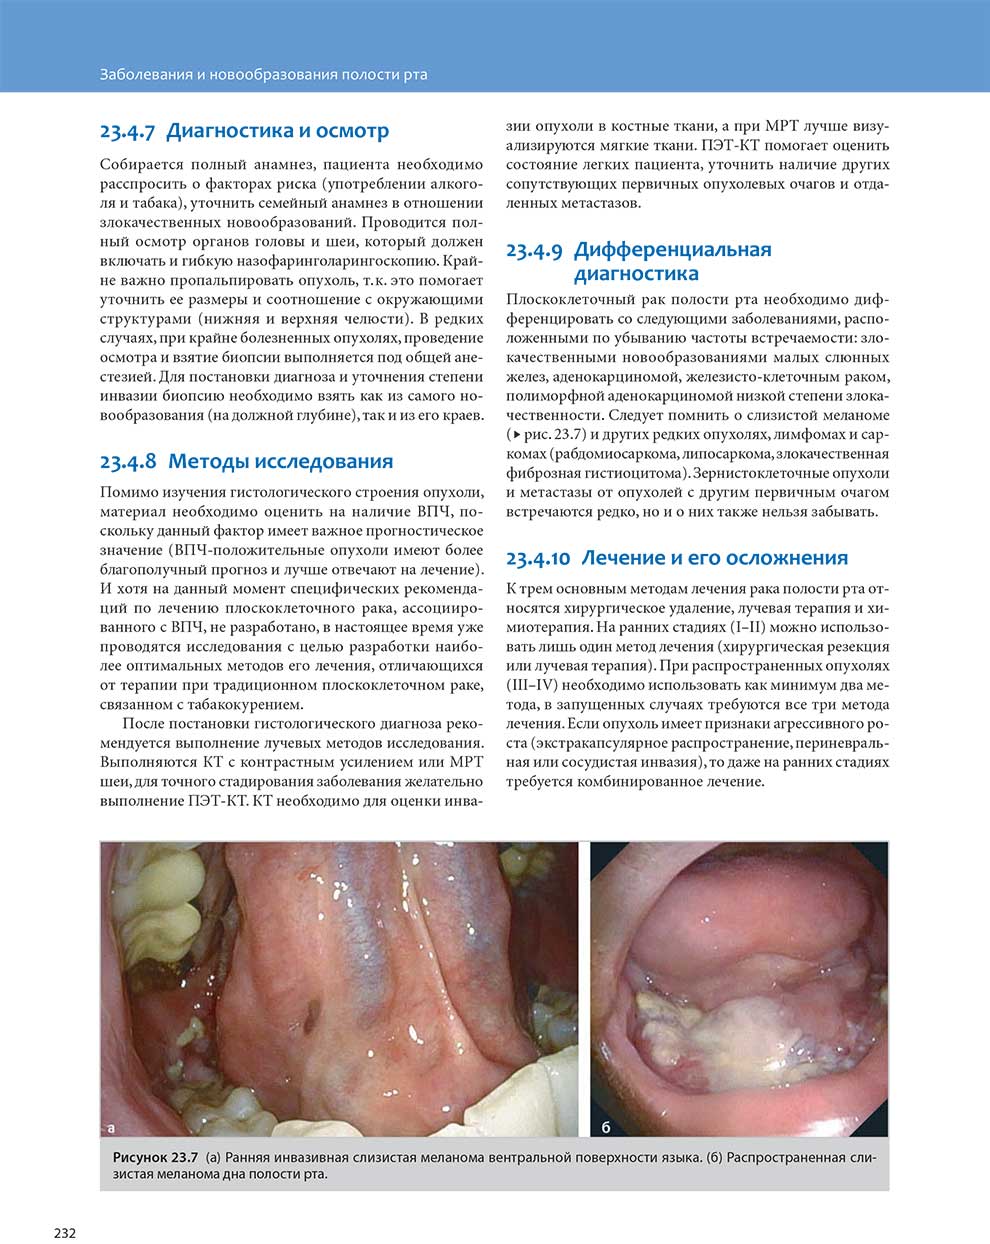 Ранняя инвазивная слизистая меланома вентральной поверхности языка.